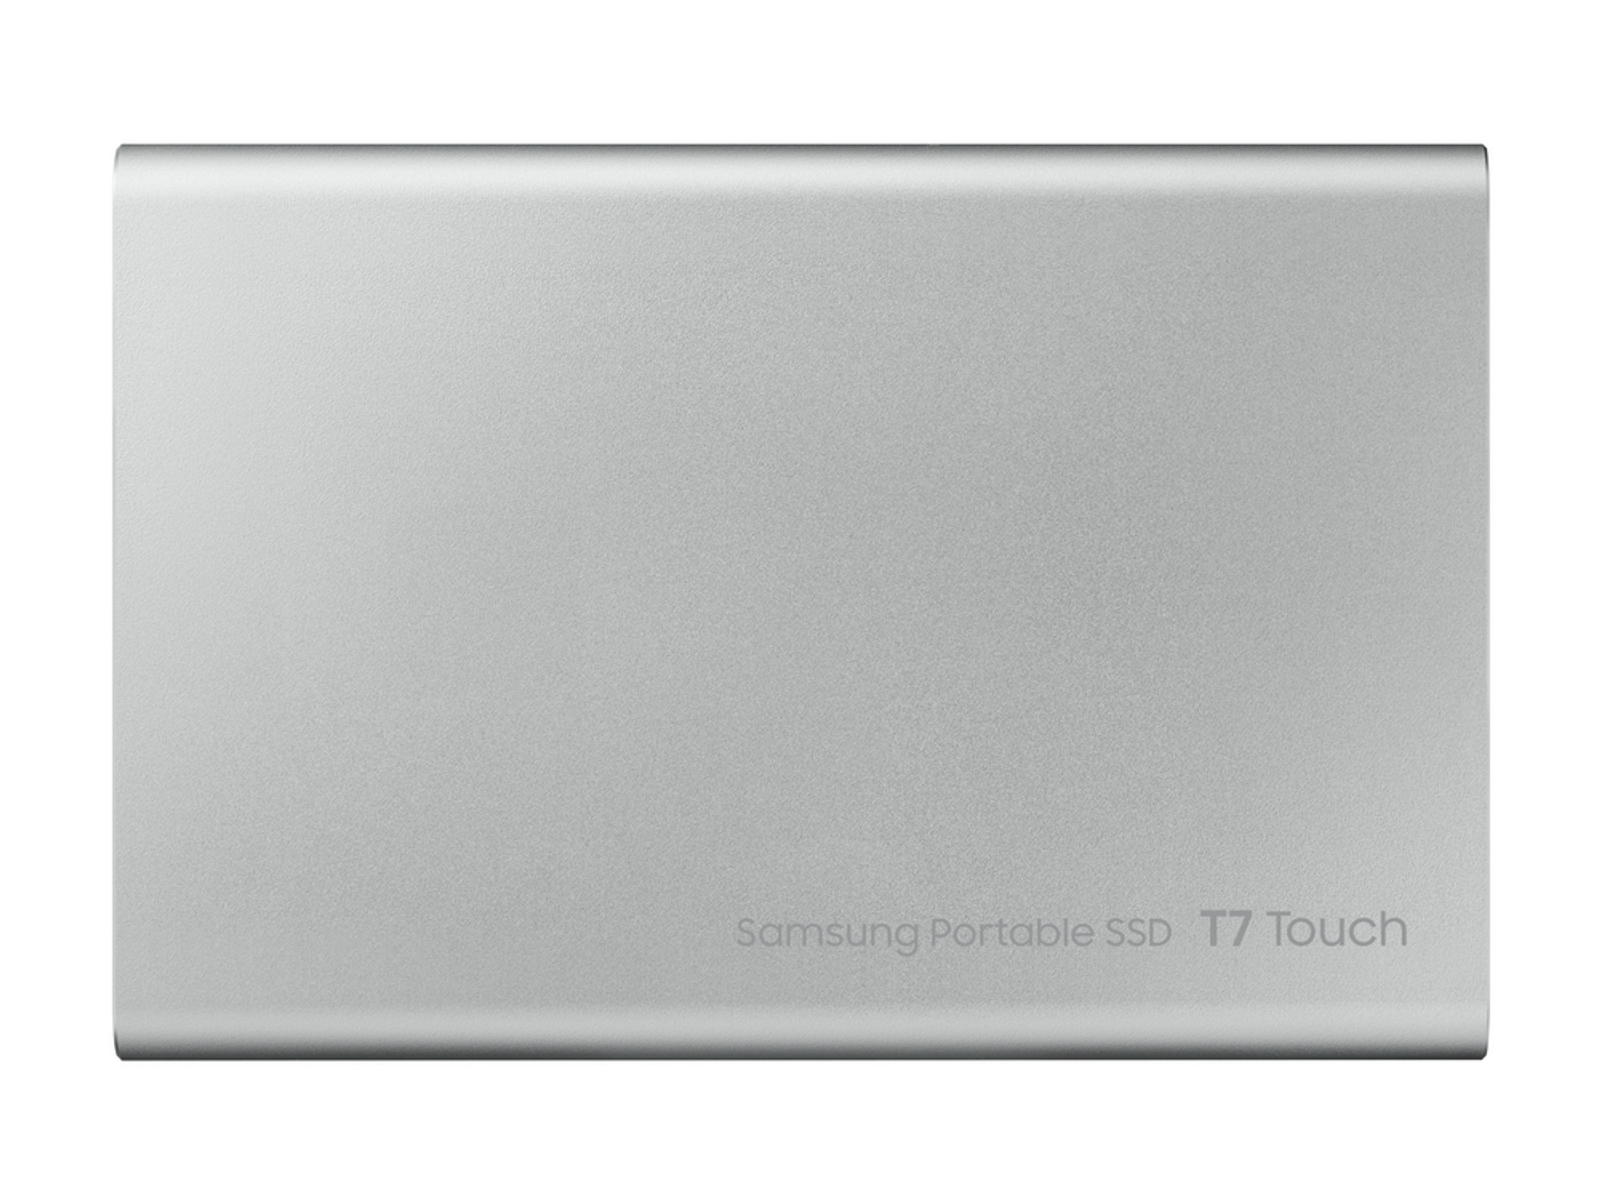 SILVER, SSD, MU-PC2T0S/WW TOUCH 2TB T7 TB Silber SAMSUNG SSD PORT. extern, 2